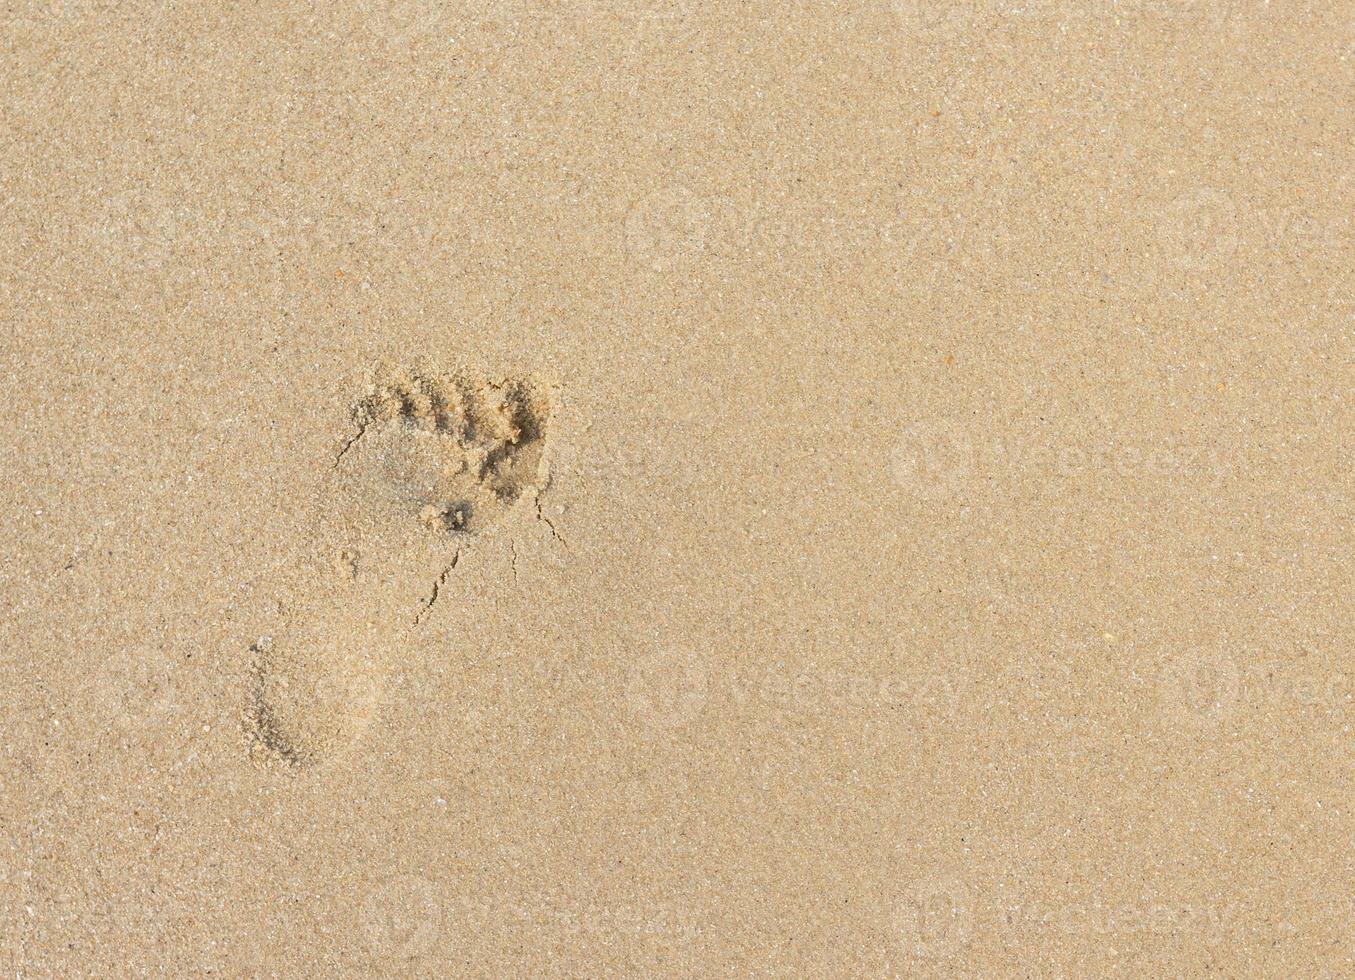 Fußspuren an einem Sandstrand foto